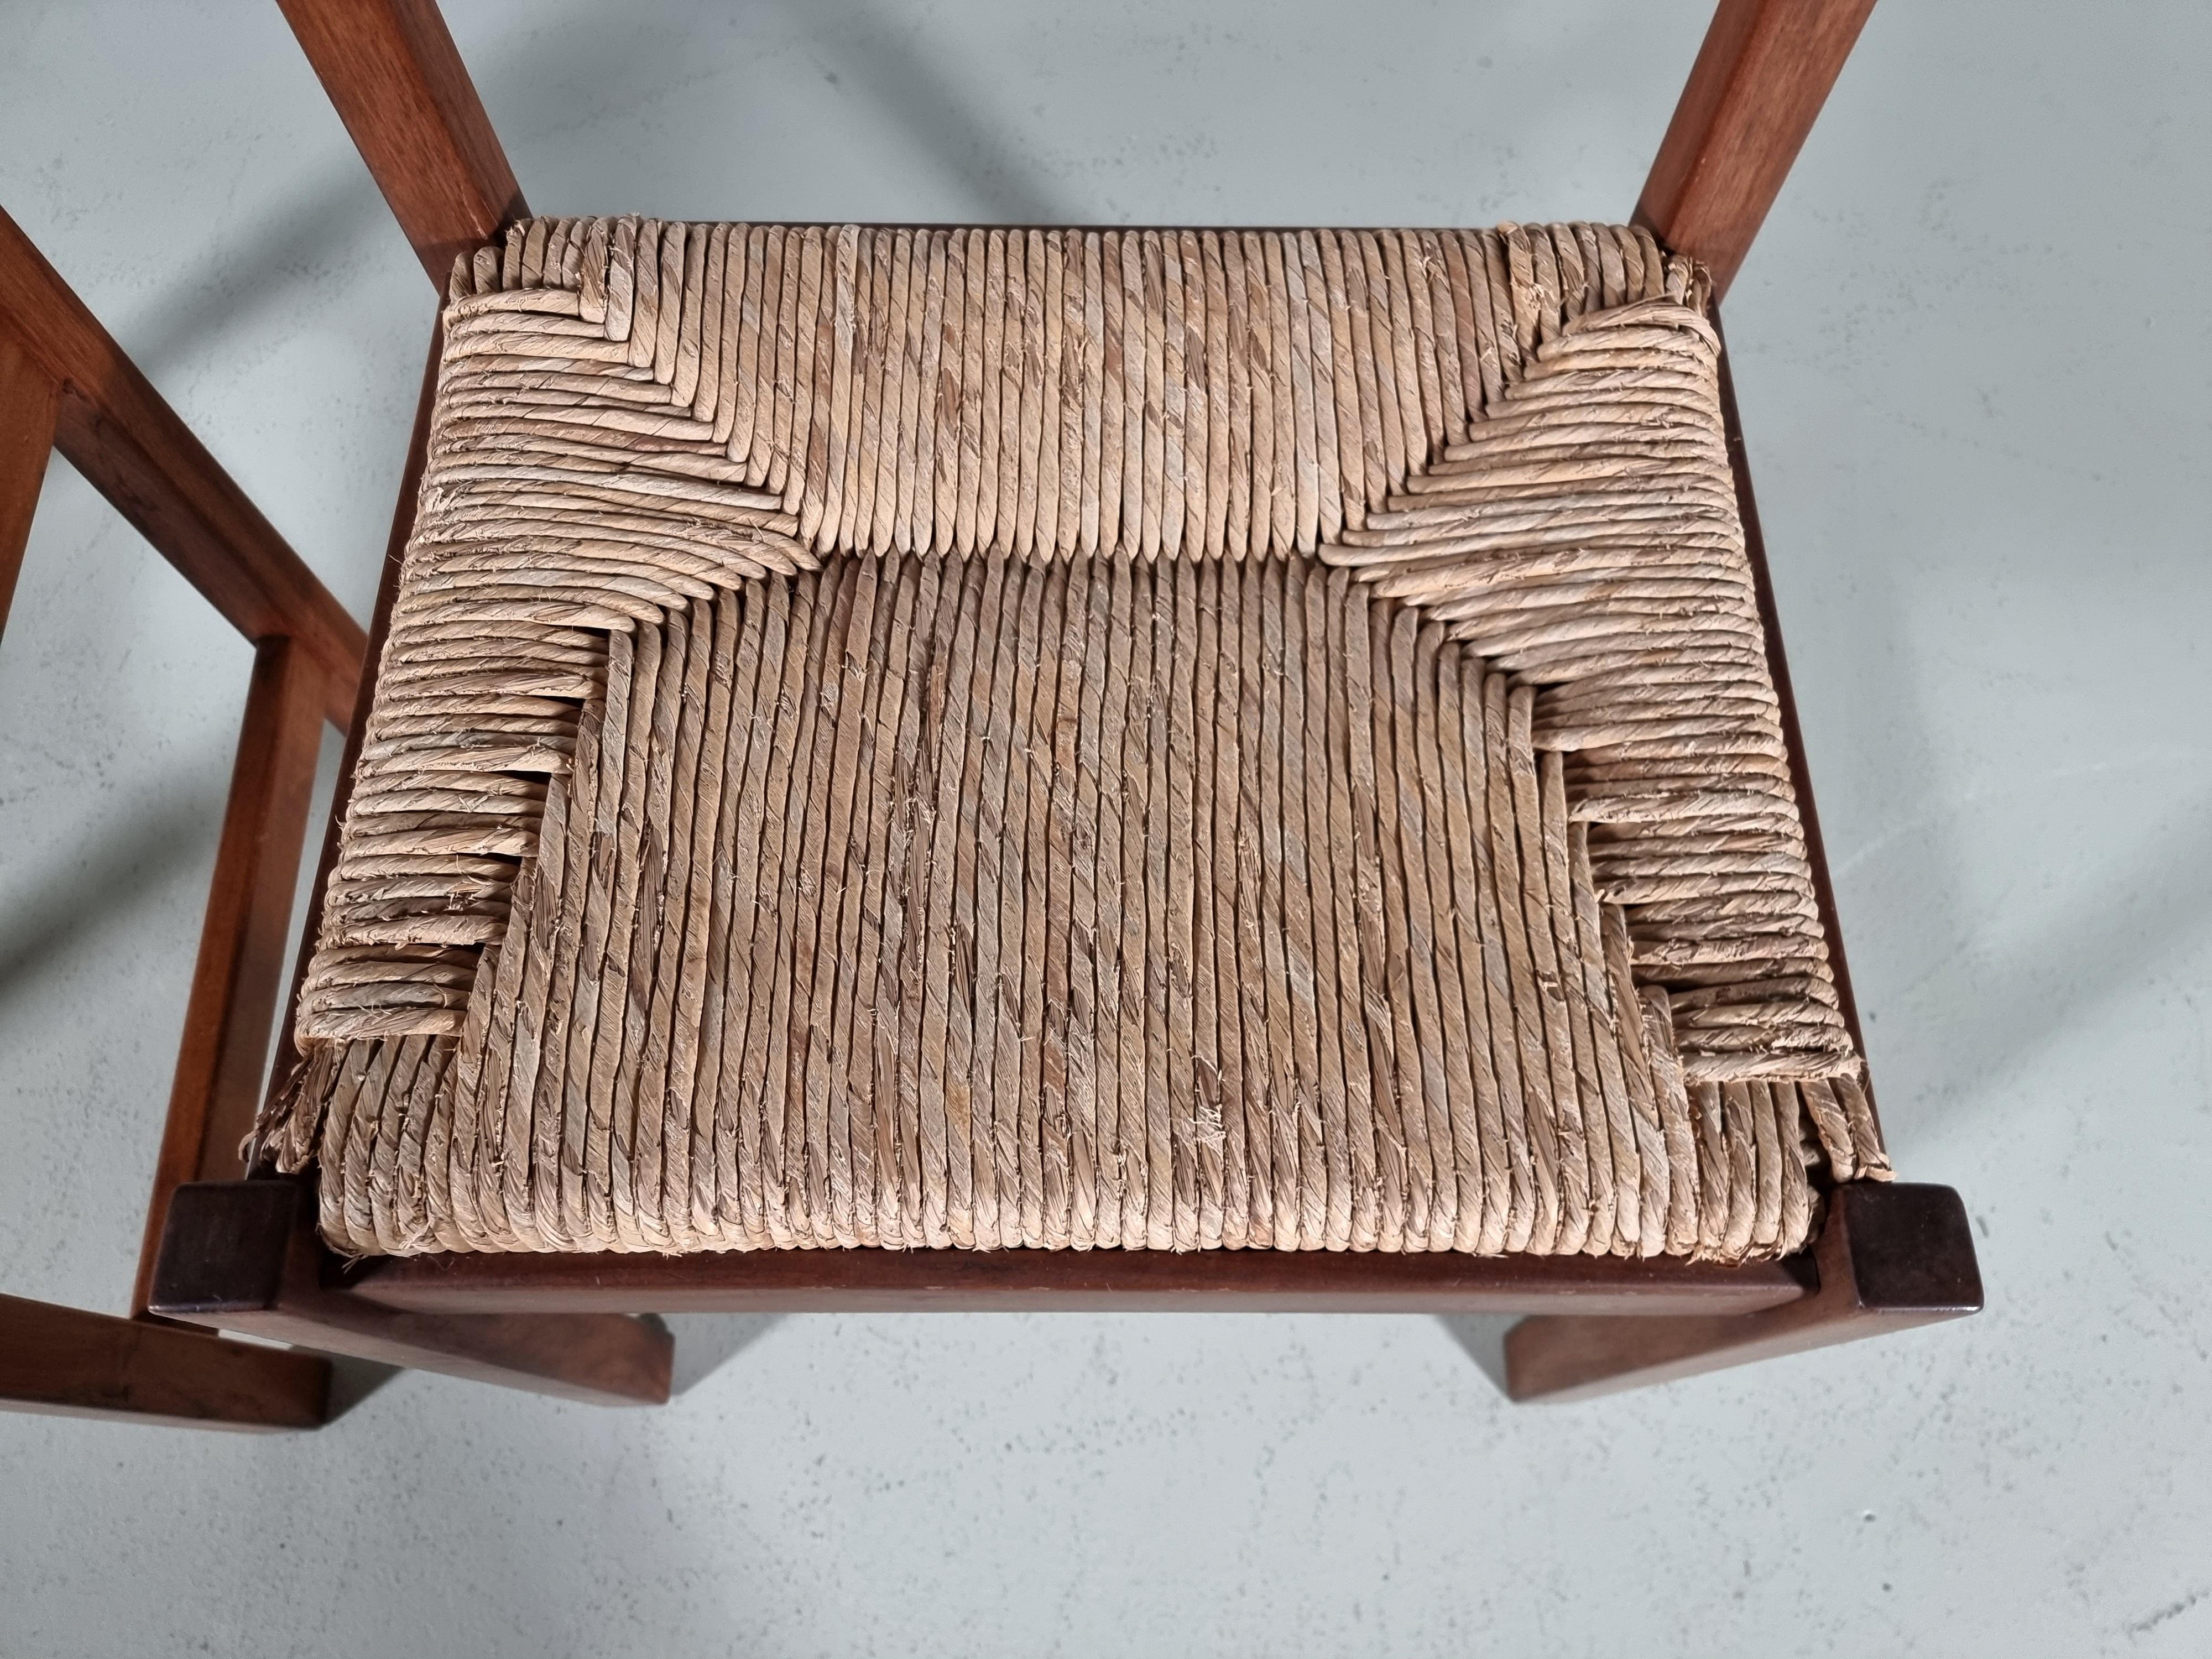 Torbecchia Chairs in walnut and rush, Giovanni Michelucci for Poltronova, 1960s For Sale 6